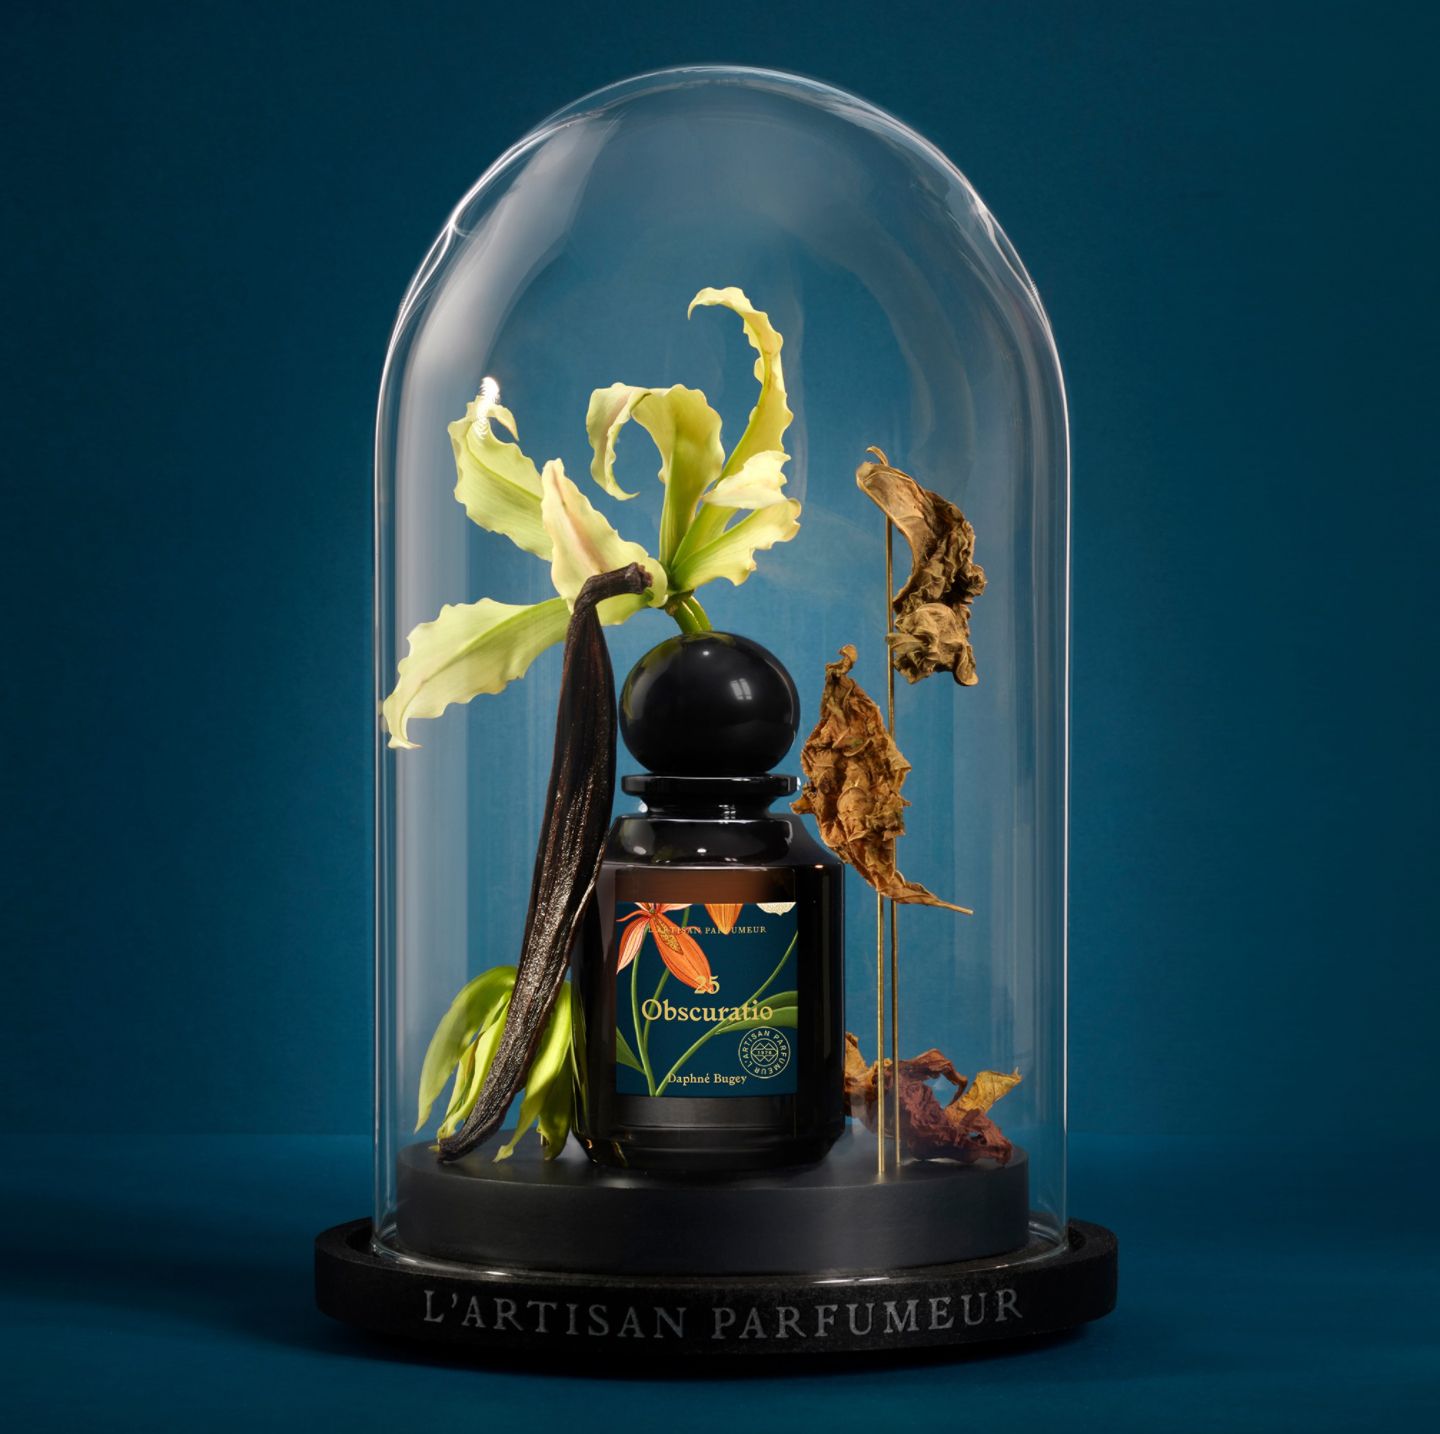 L'Artisan Parfumeur La Botanique: 25 Obscuratio & 63 Crepusculum 